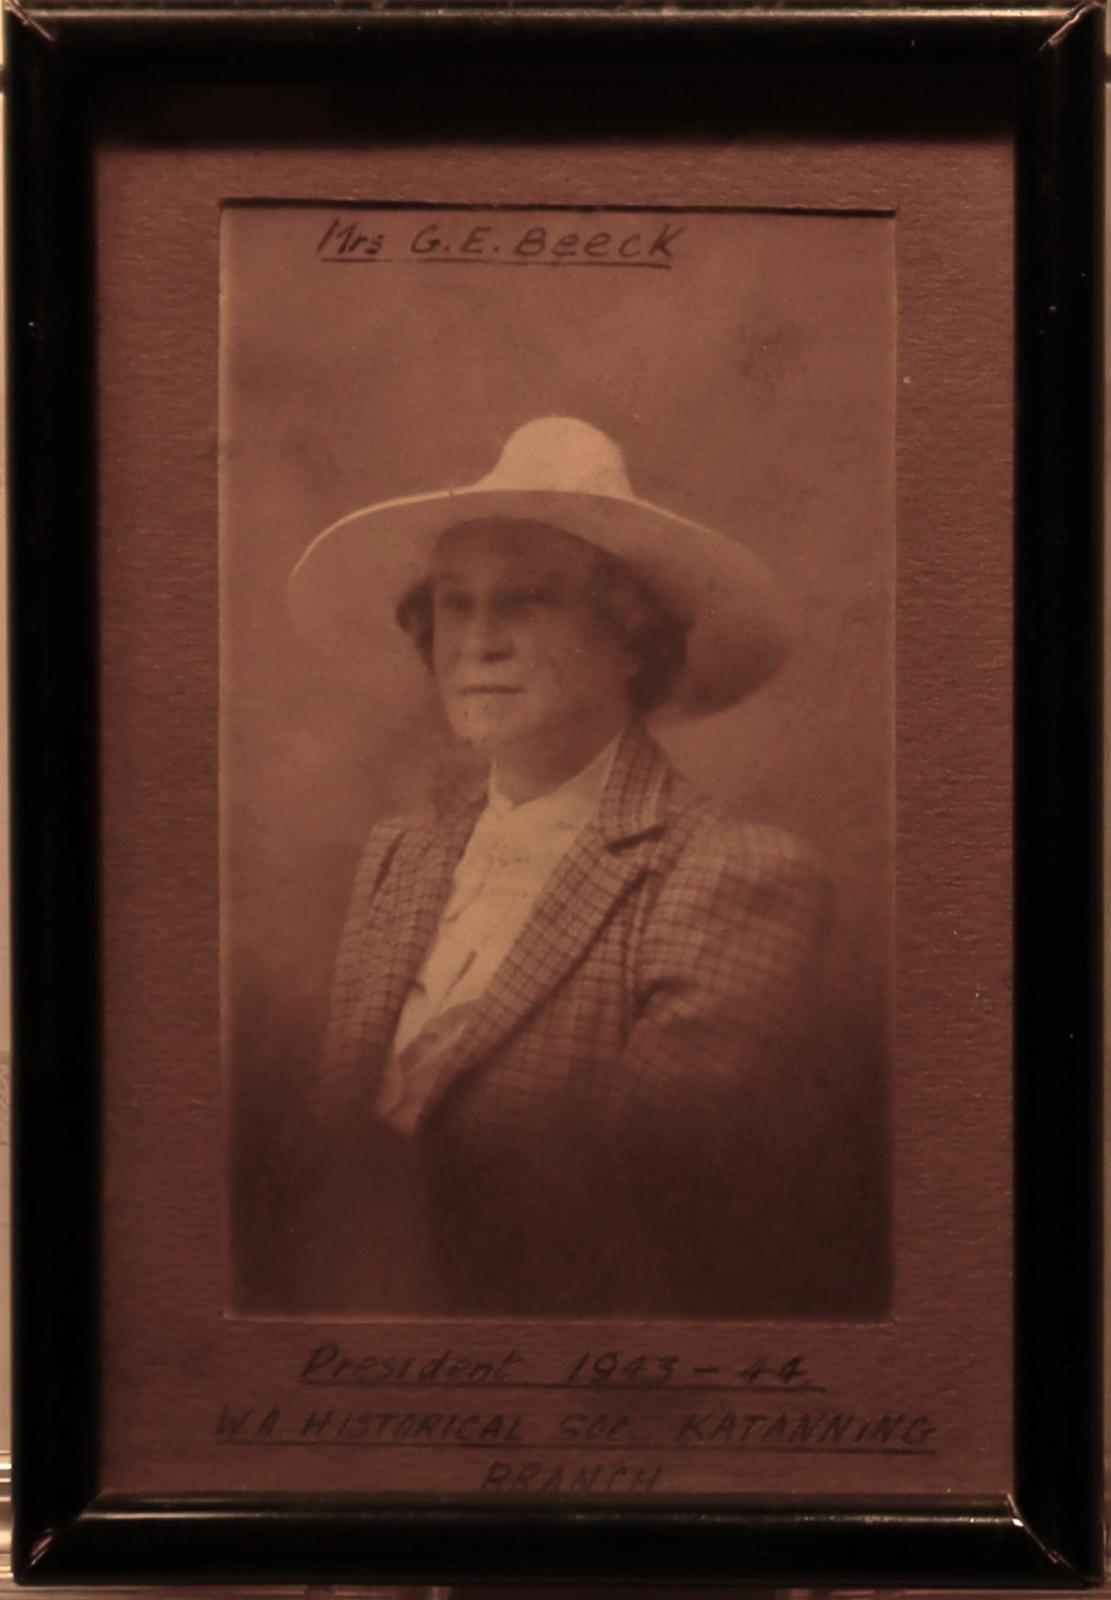 Mrs G.E. Beeck